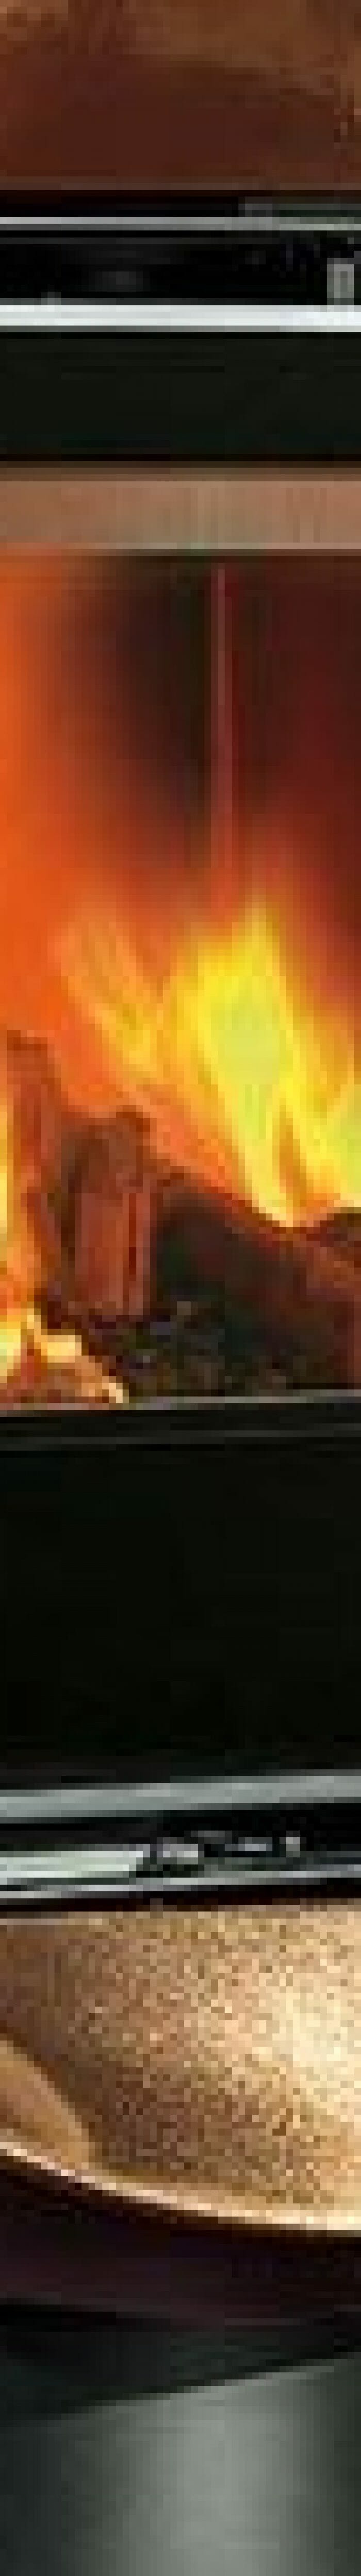 Carillon Fireball - Uma lareira portátil para aquecer qualquer cômodo da casa.